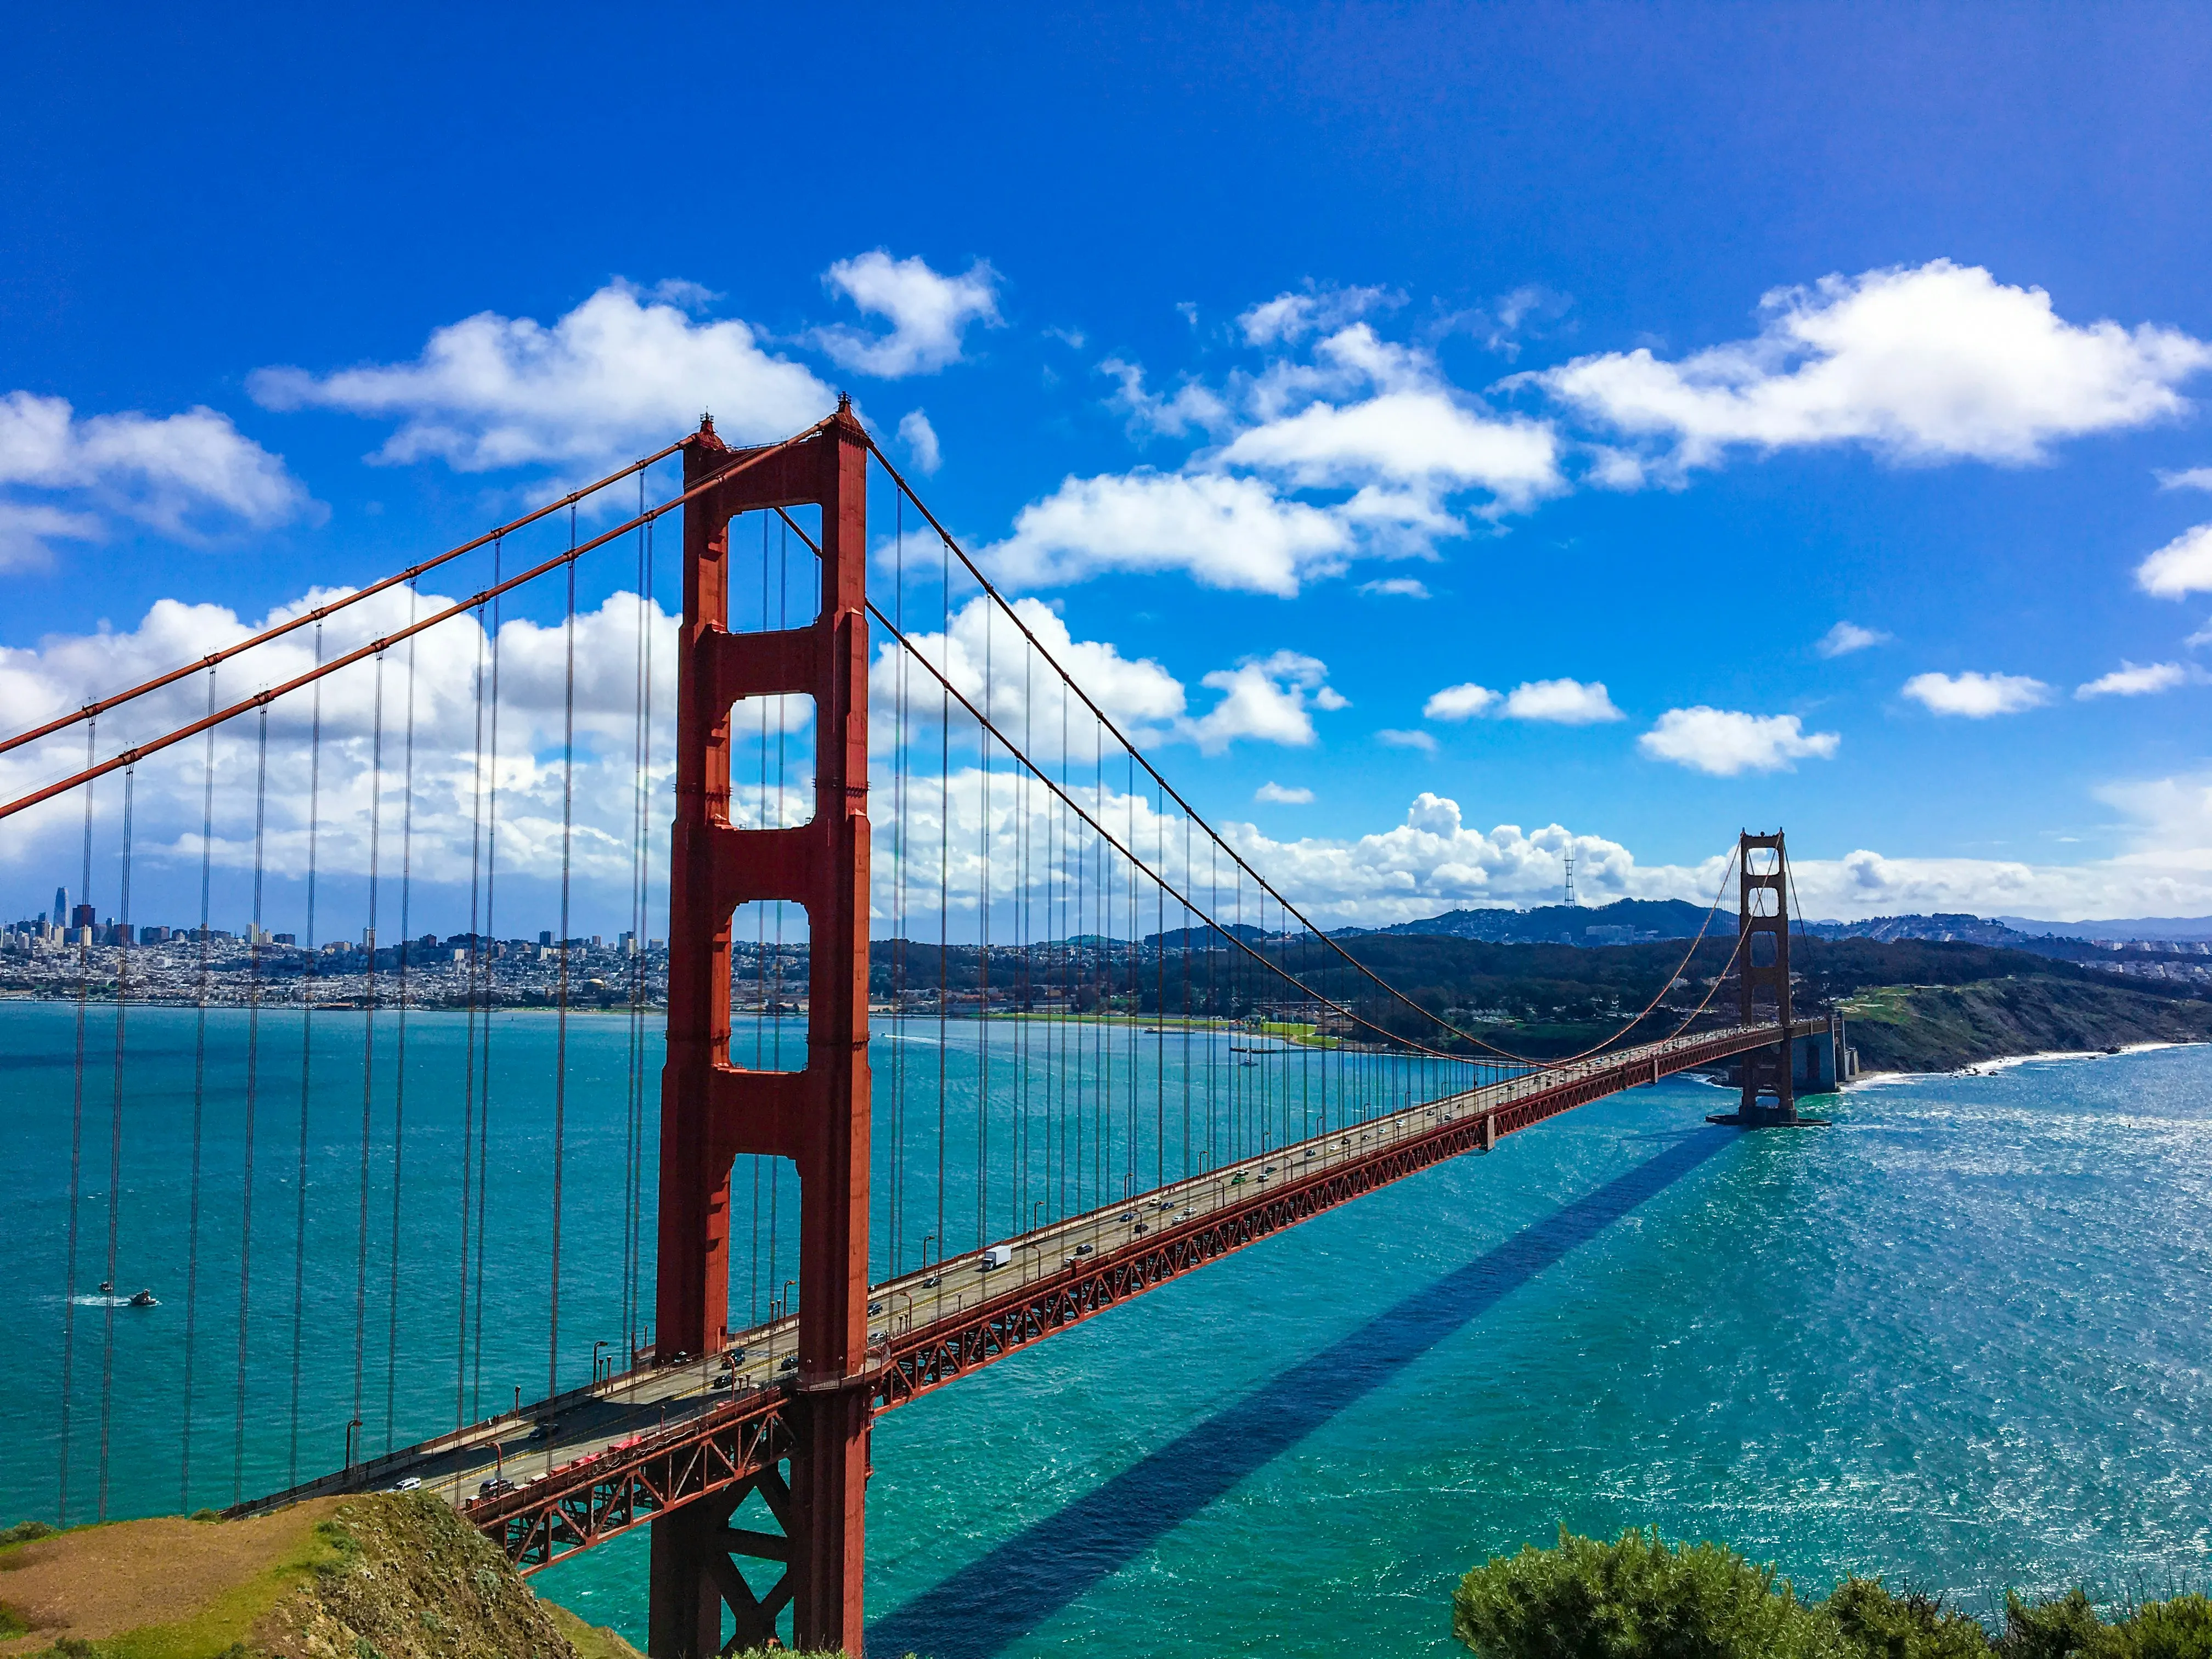 Мост Золотые Ворота в США занял 10 место в рейтинге самых желанных достопримечательностей мира для посещения